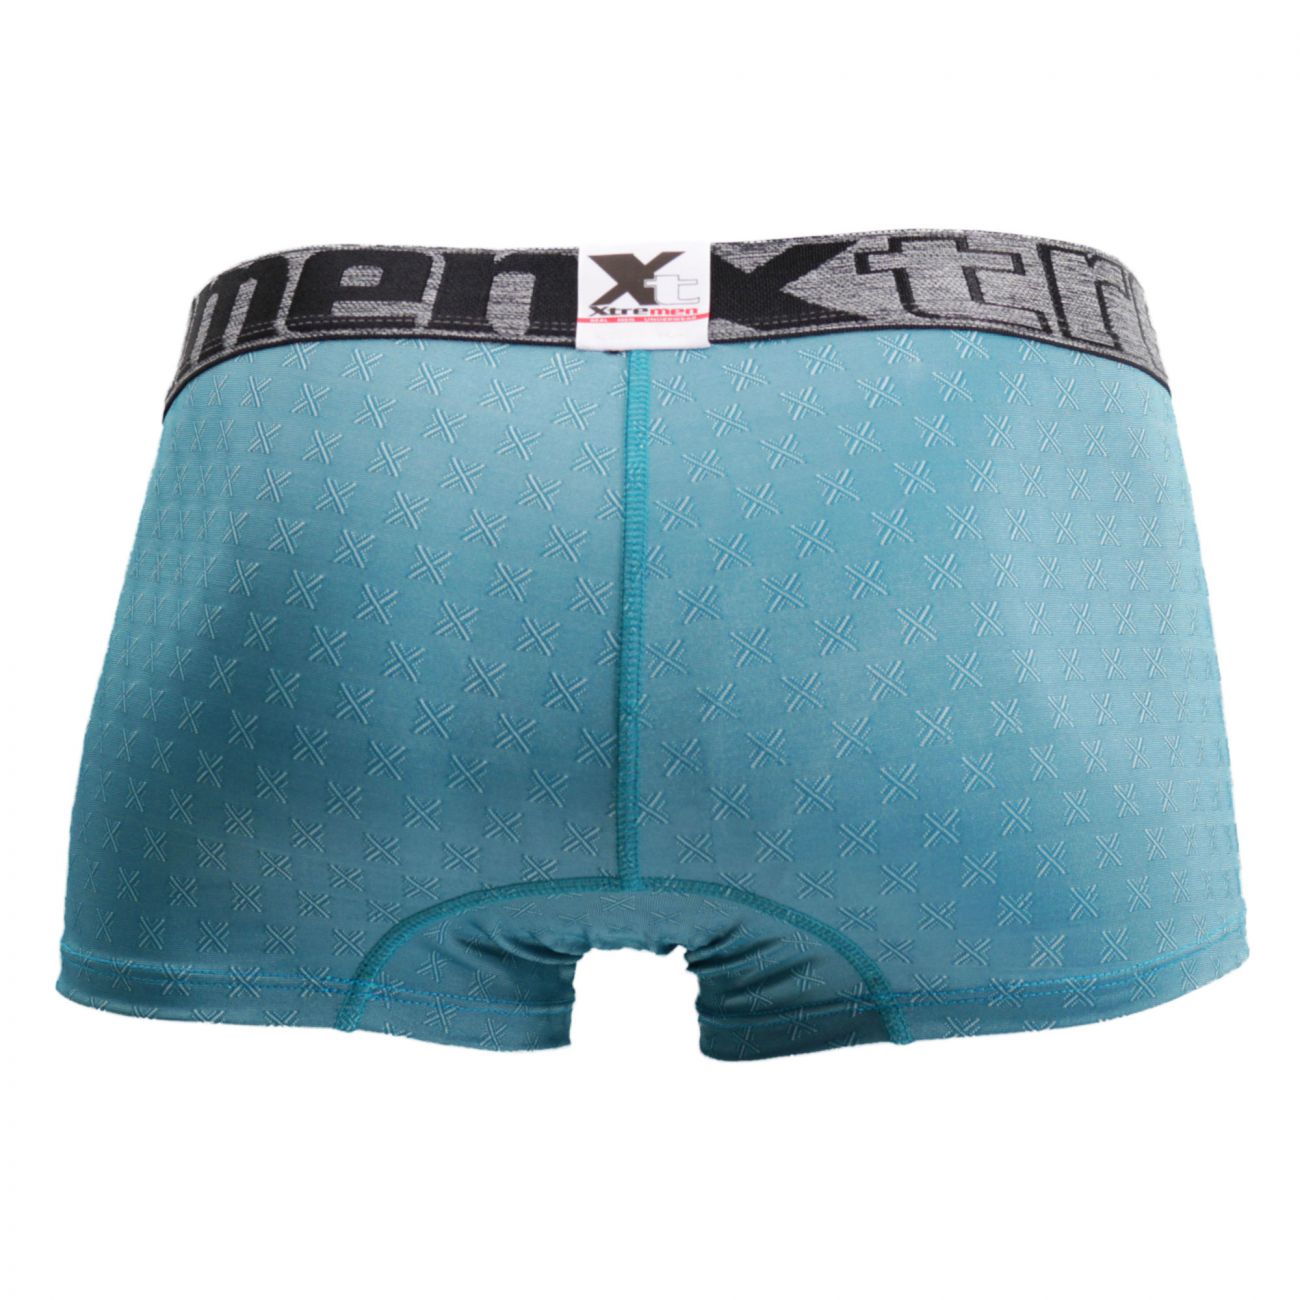 Mens Underwear: Xtremen 51442C Jacquard -X- Boxer Briefs | eBay